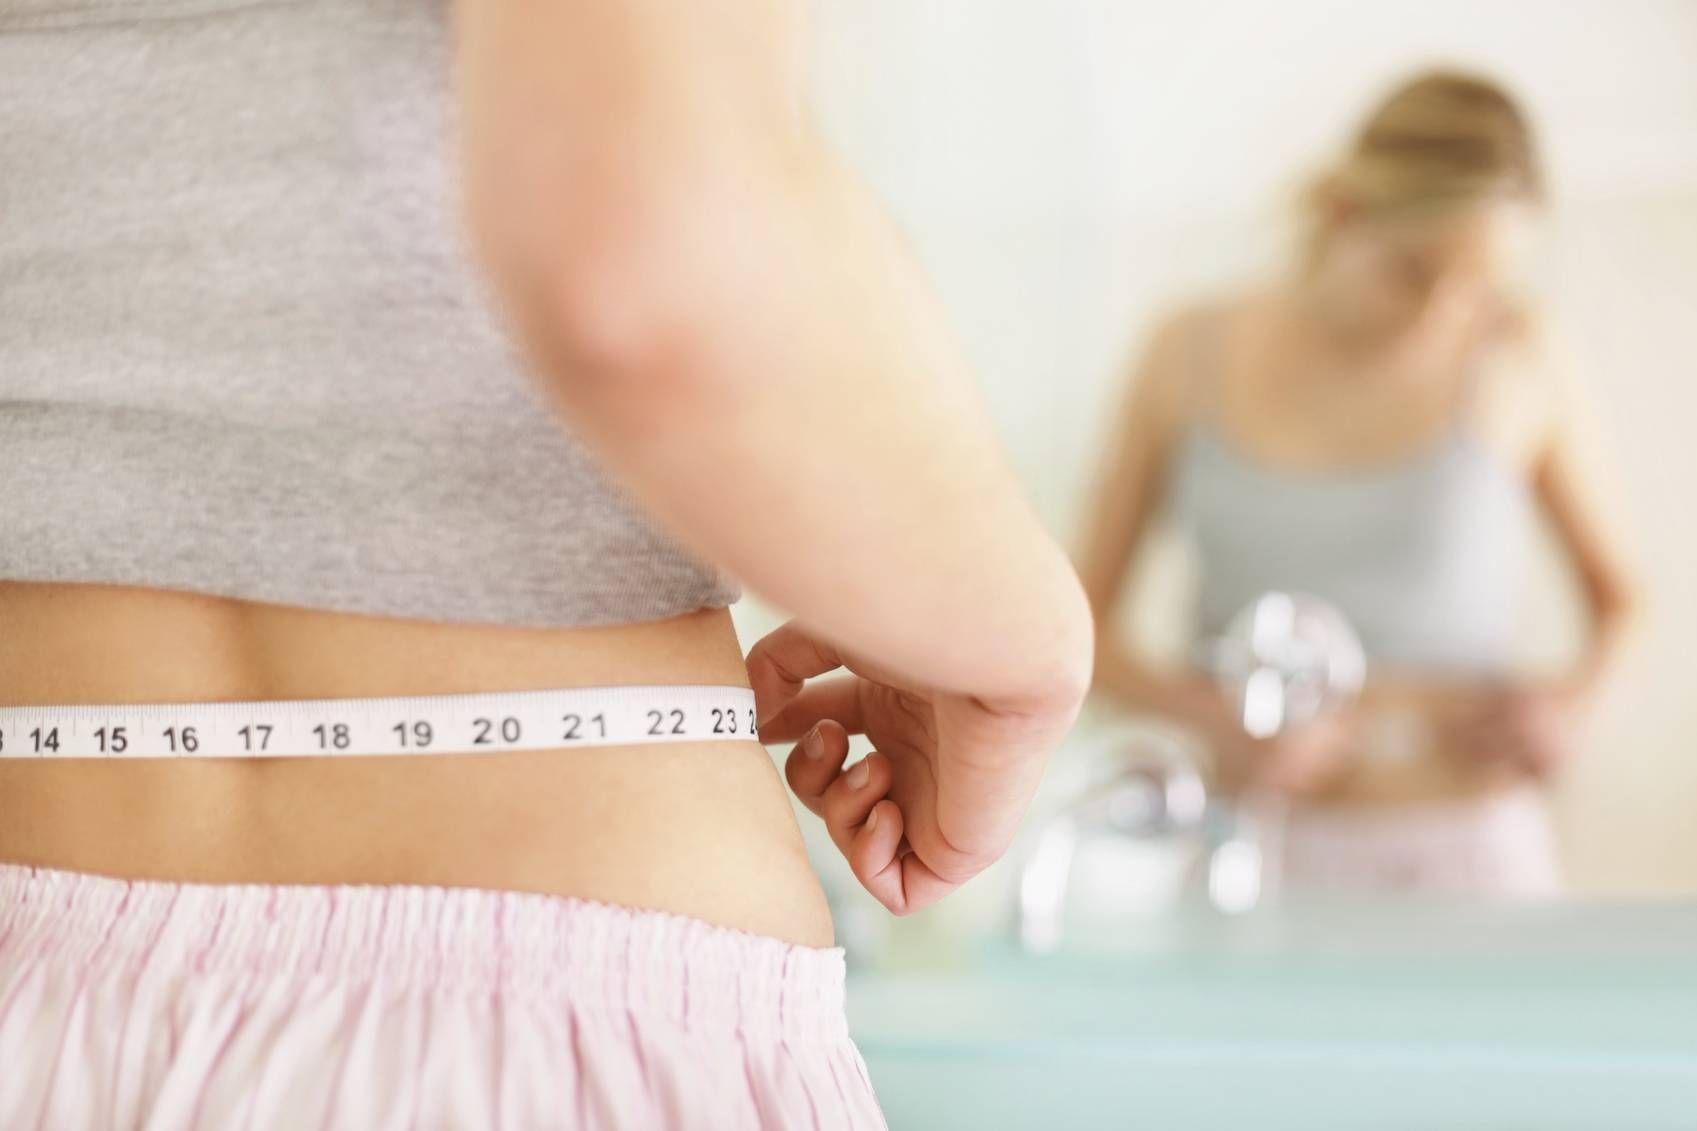 Як схуднення може спровокувати раптову смерть